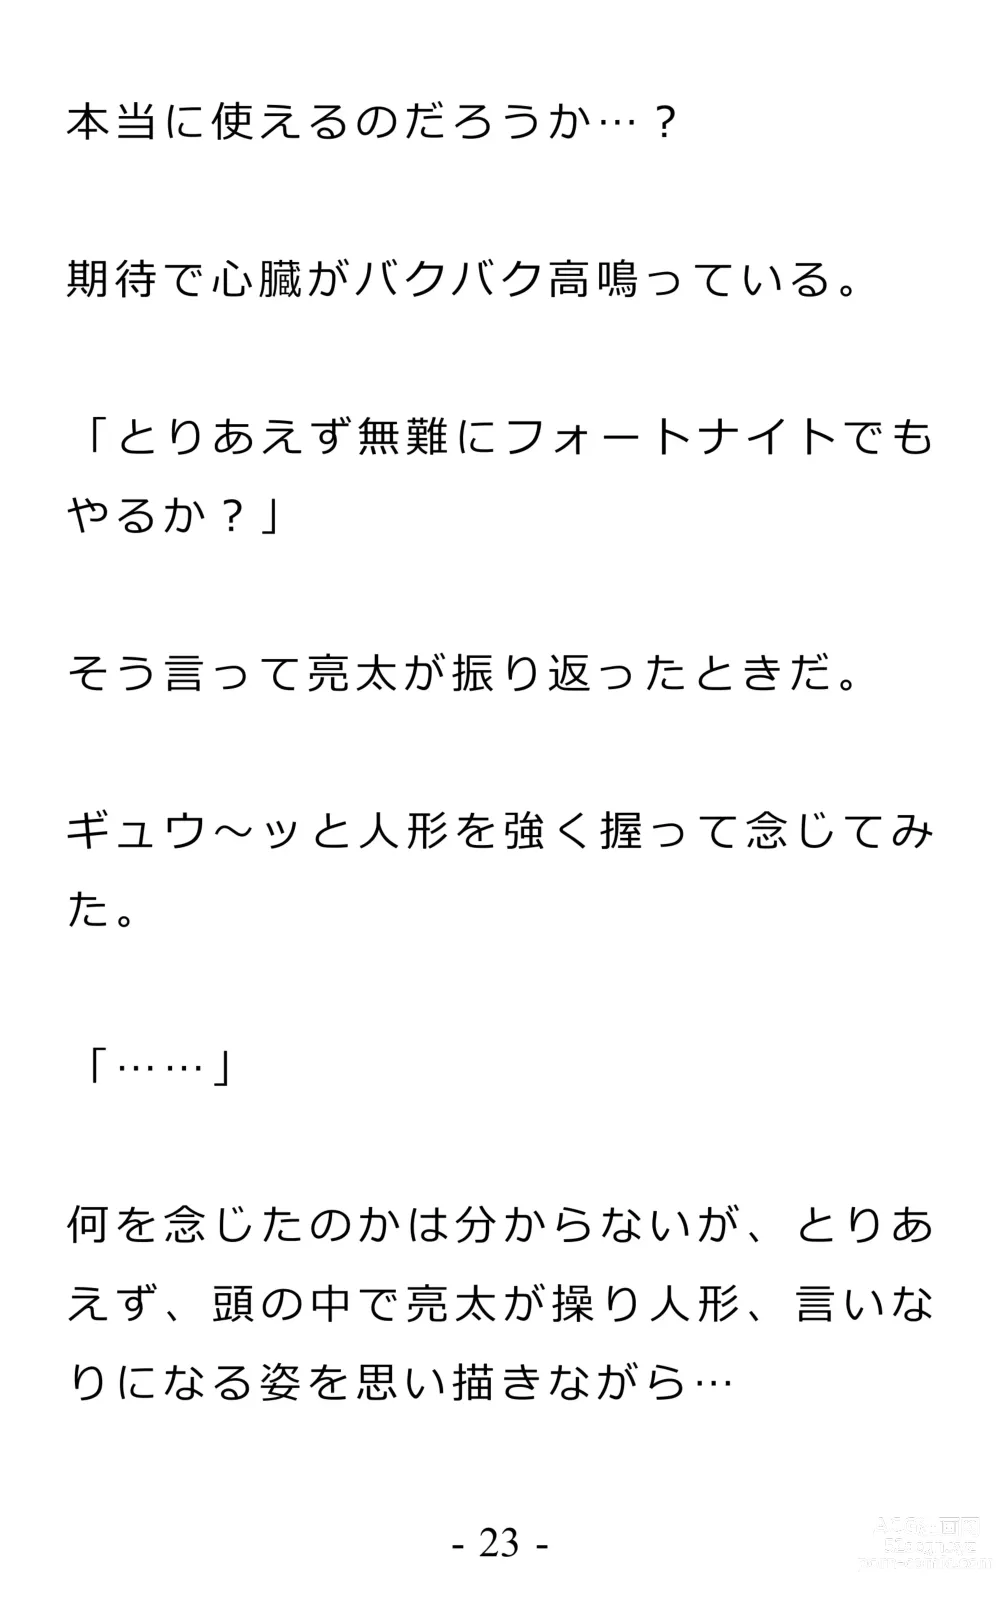 Page 27 of doujinshi Chijoku no Ayatsuri Ningyo (1) Ryota